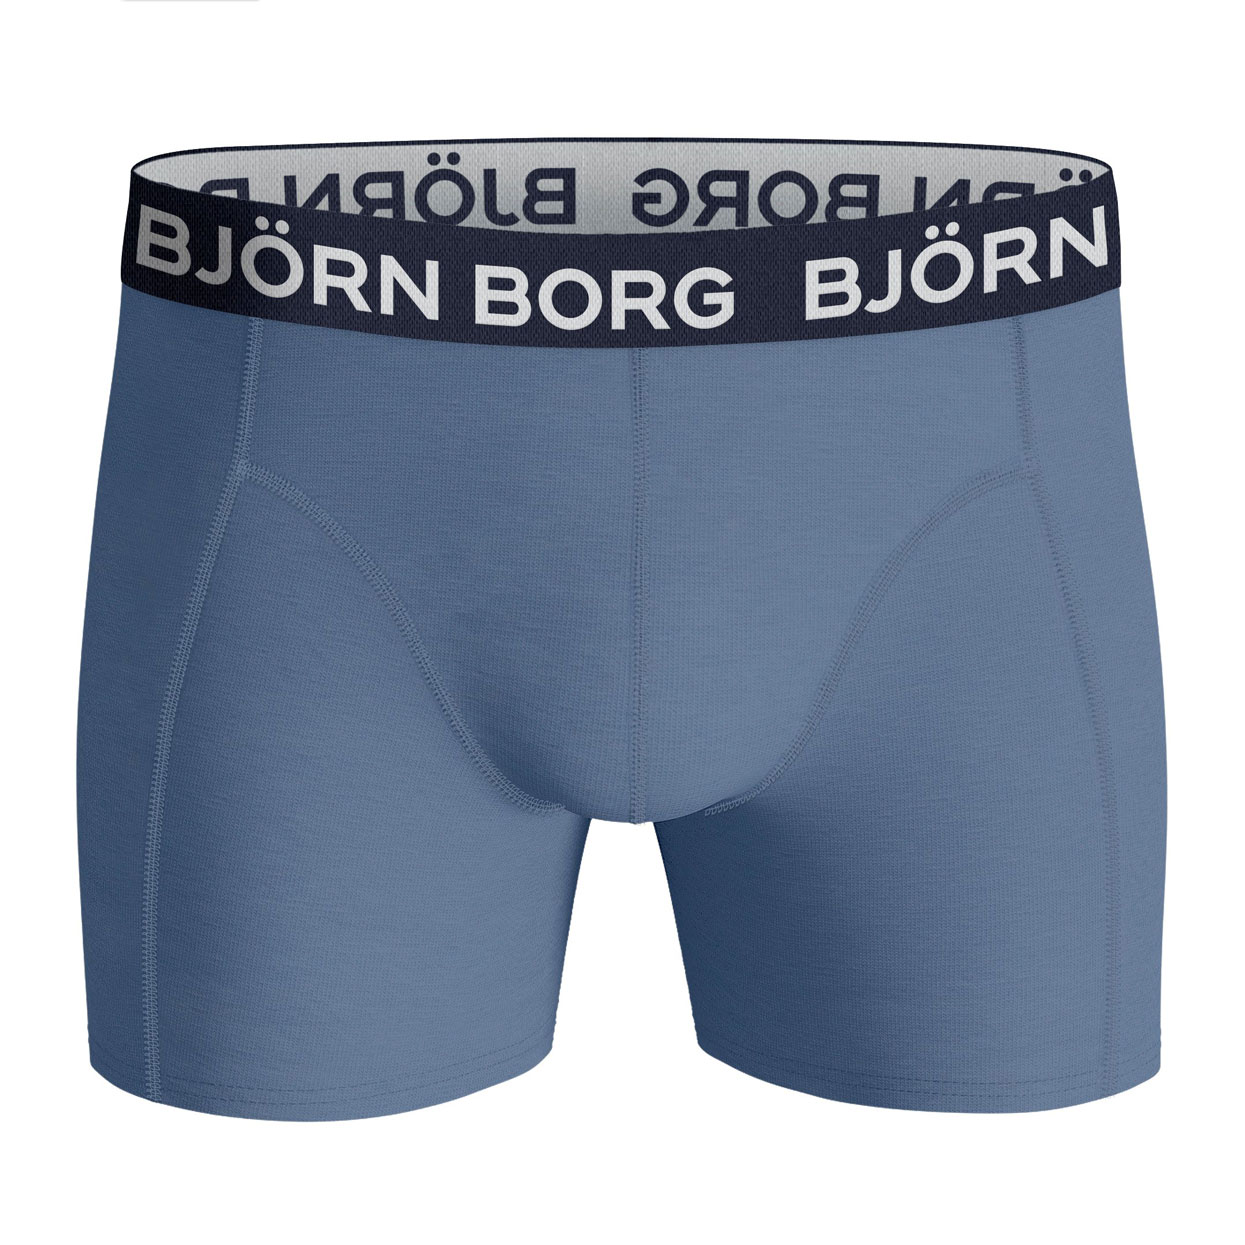 Bjorn-Borg-10002104-mp003-voor